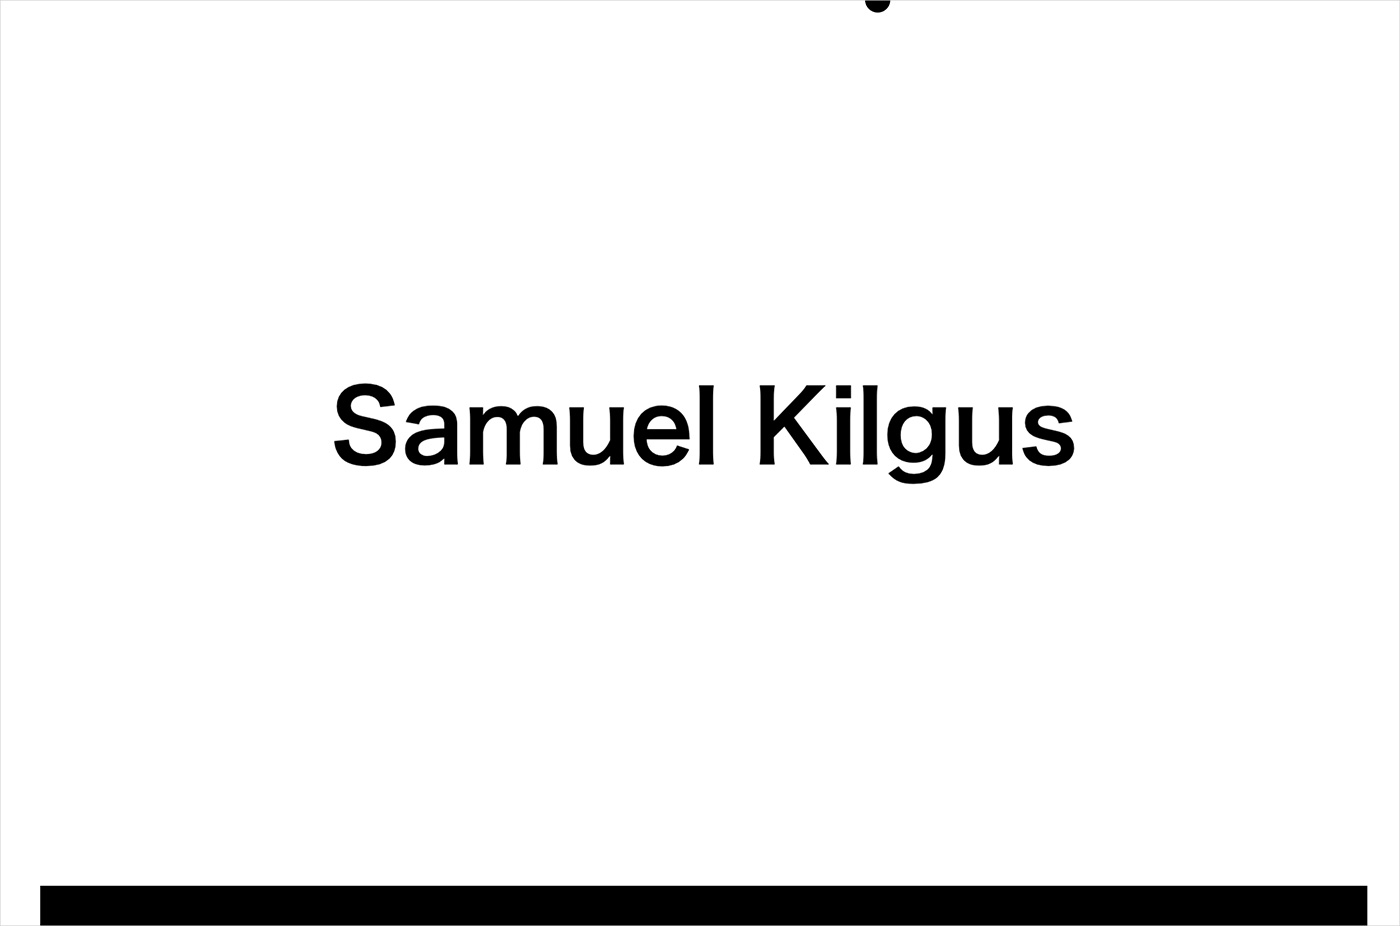 Samuel Kilgusウェブサイトの画面キャプチャ画像